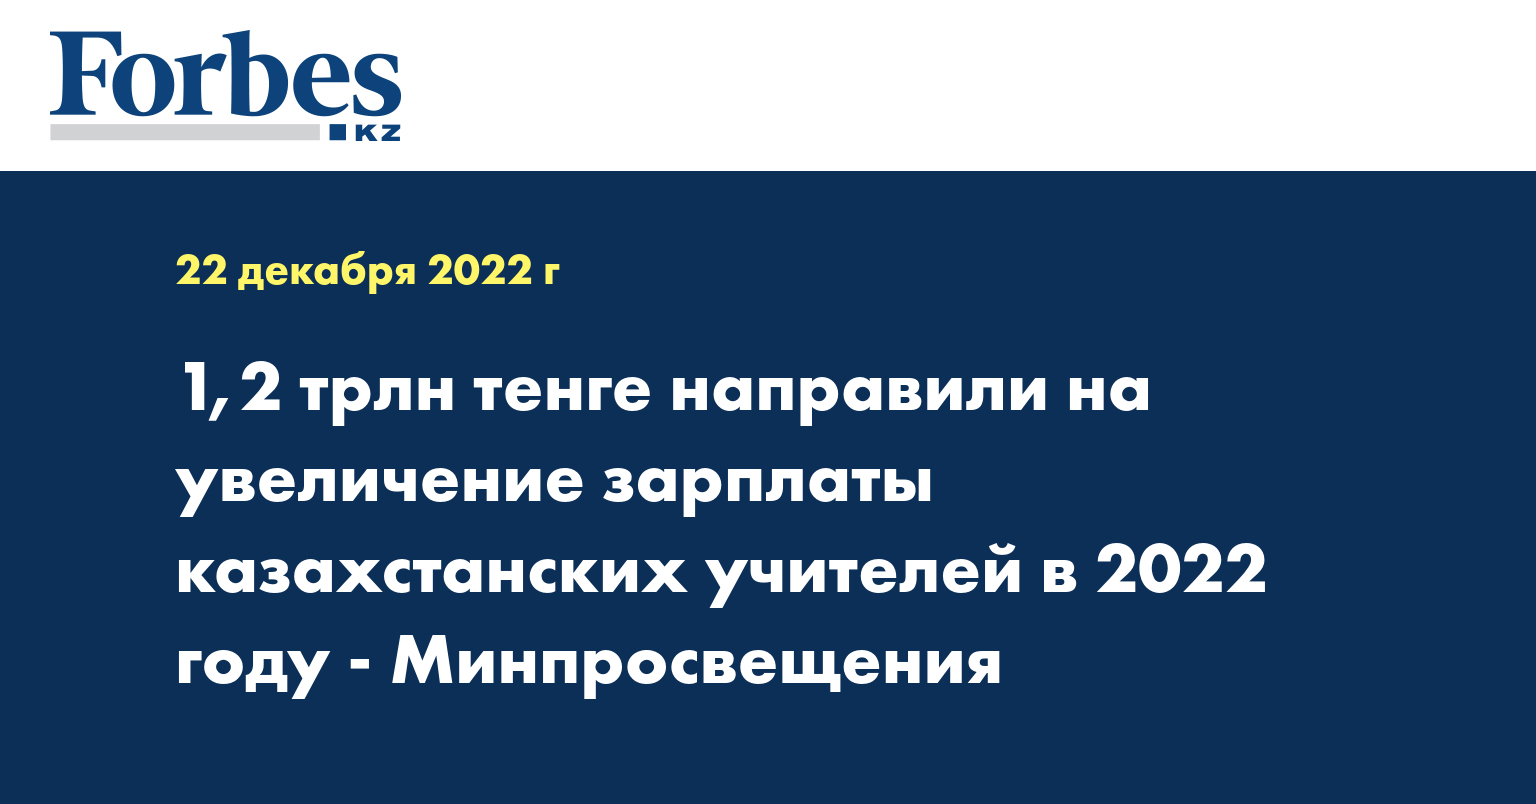 1,2 трлн тенге направили на увеличение зарплаты казахстанских учителей в 2022 году - Минпросвещения